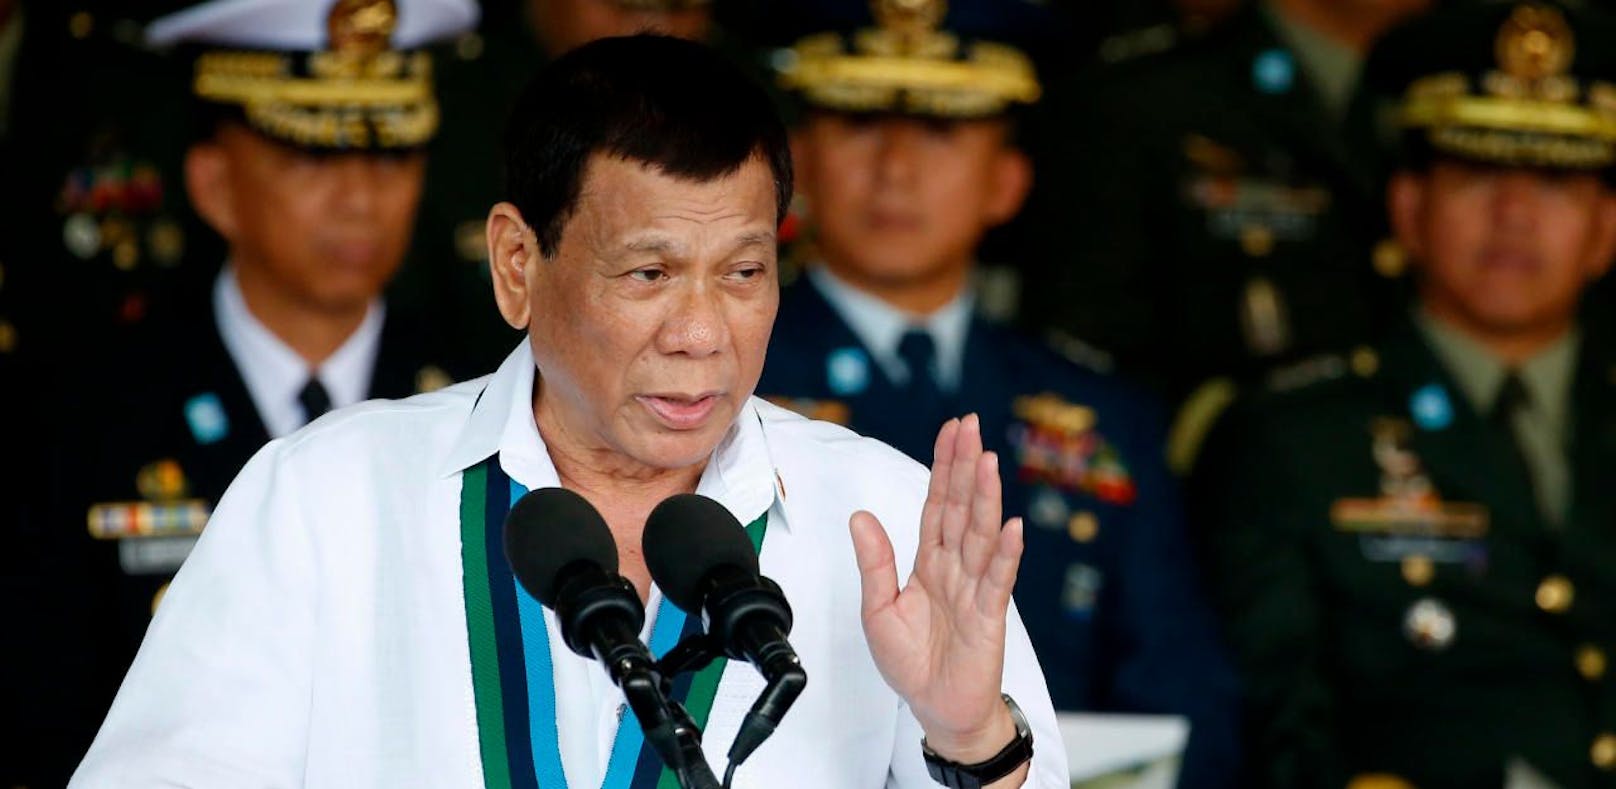 Duterte: "Ich war schwul, aber habe mich geheilt"